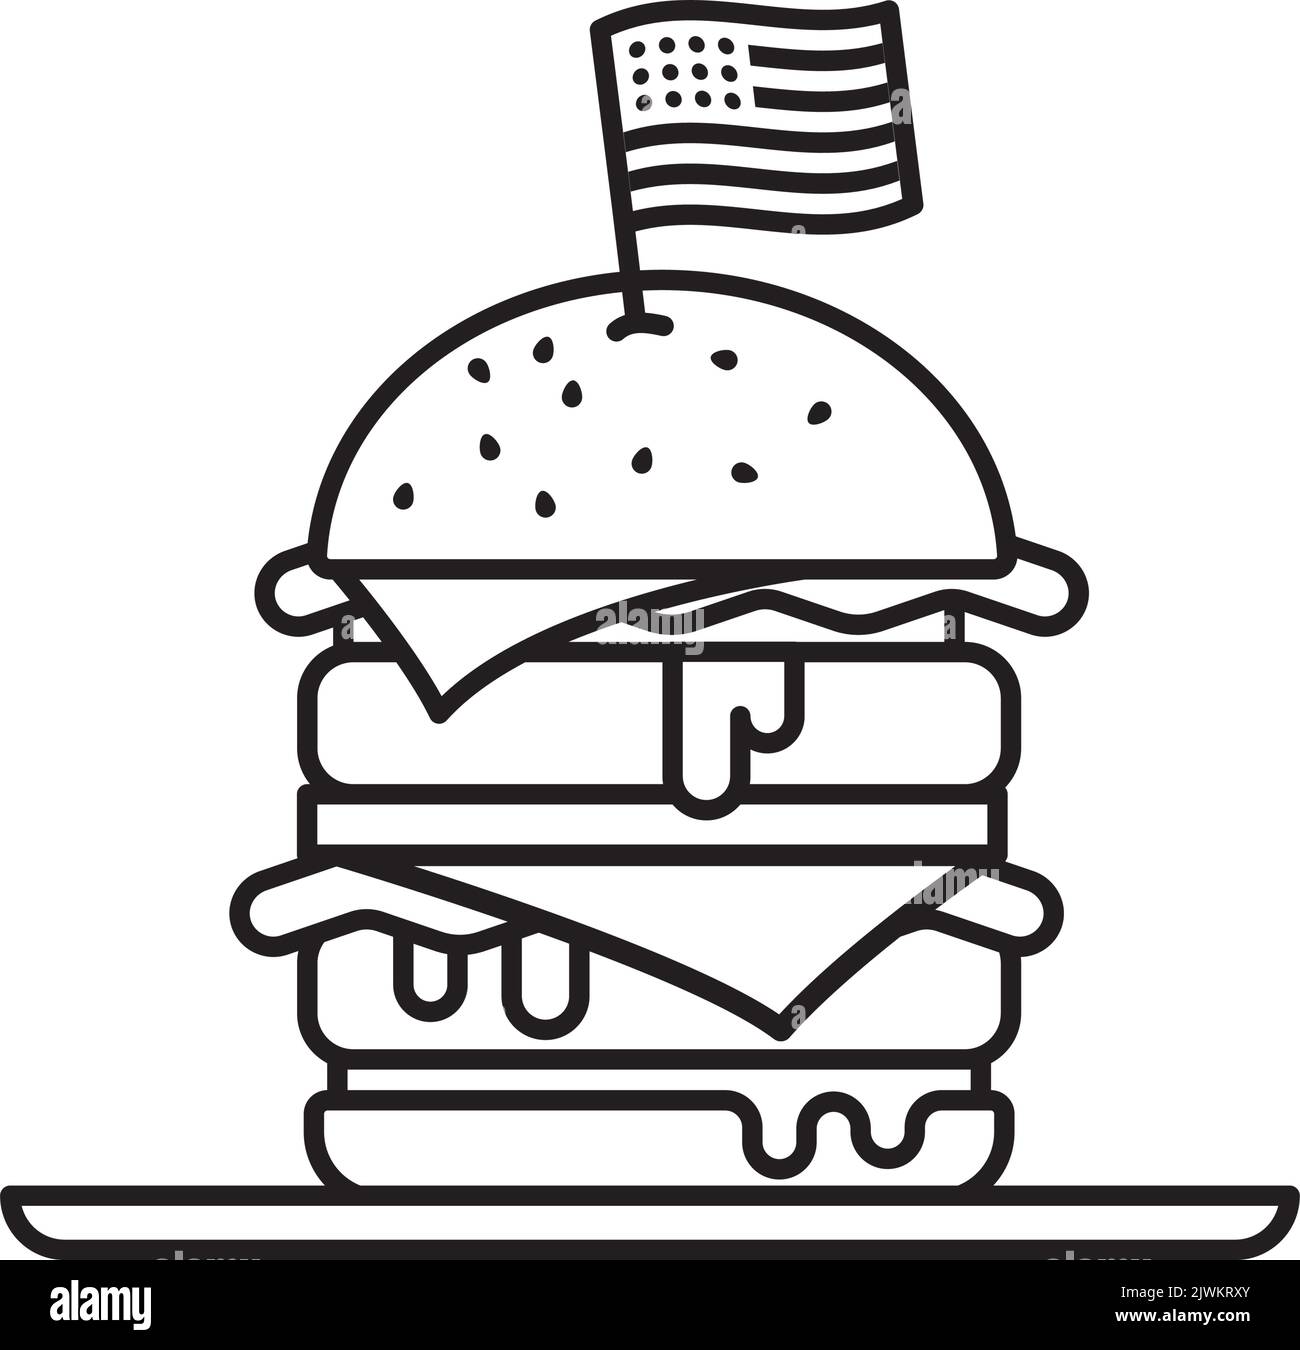 Doble Cheeseburger con ilustración vectorial de icono de línea de bandera de EE.UU. Símbolo americano de comida rápida. Ilustración del Vector